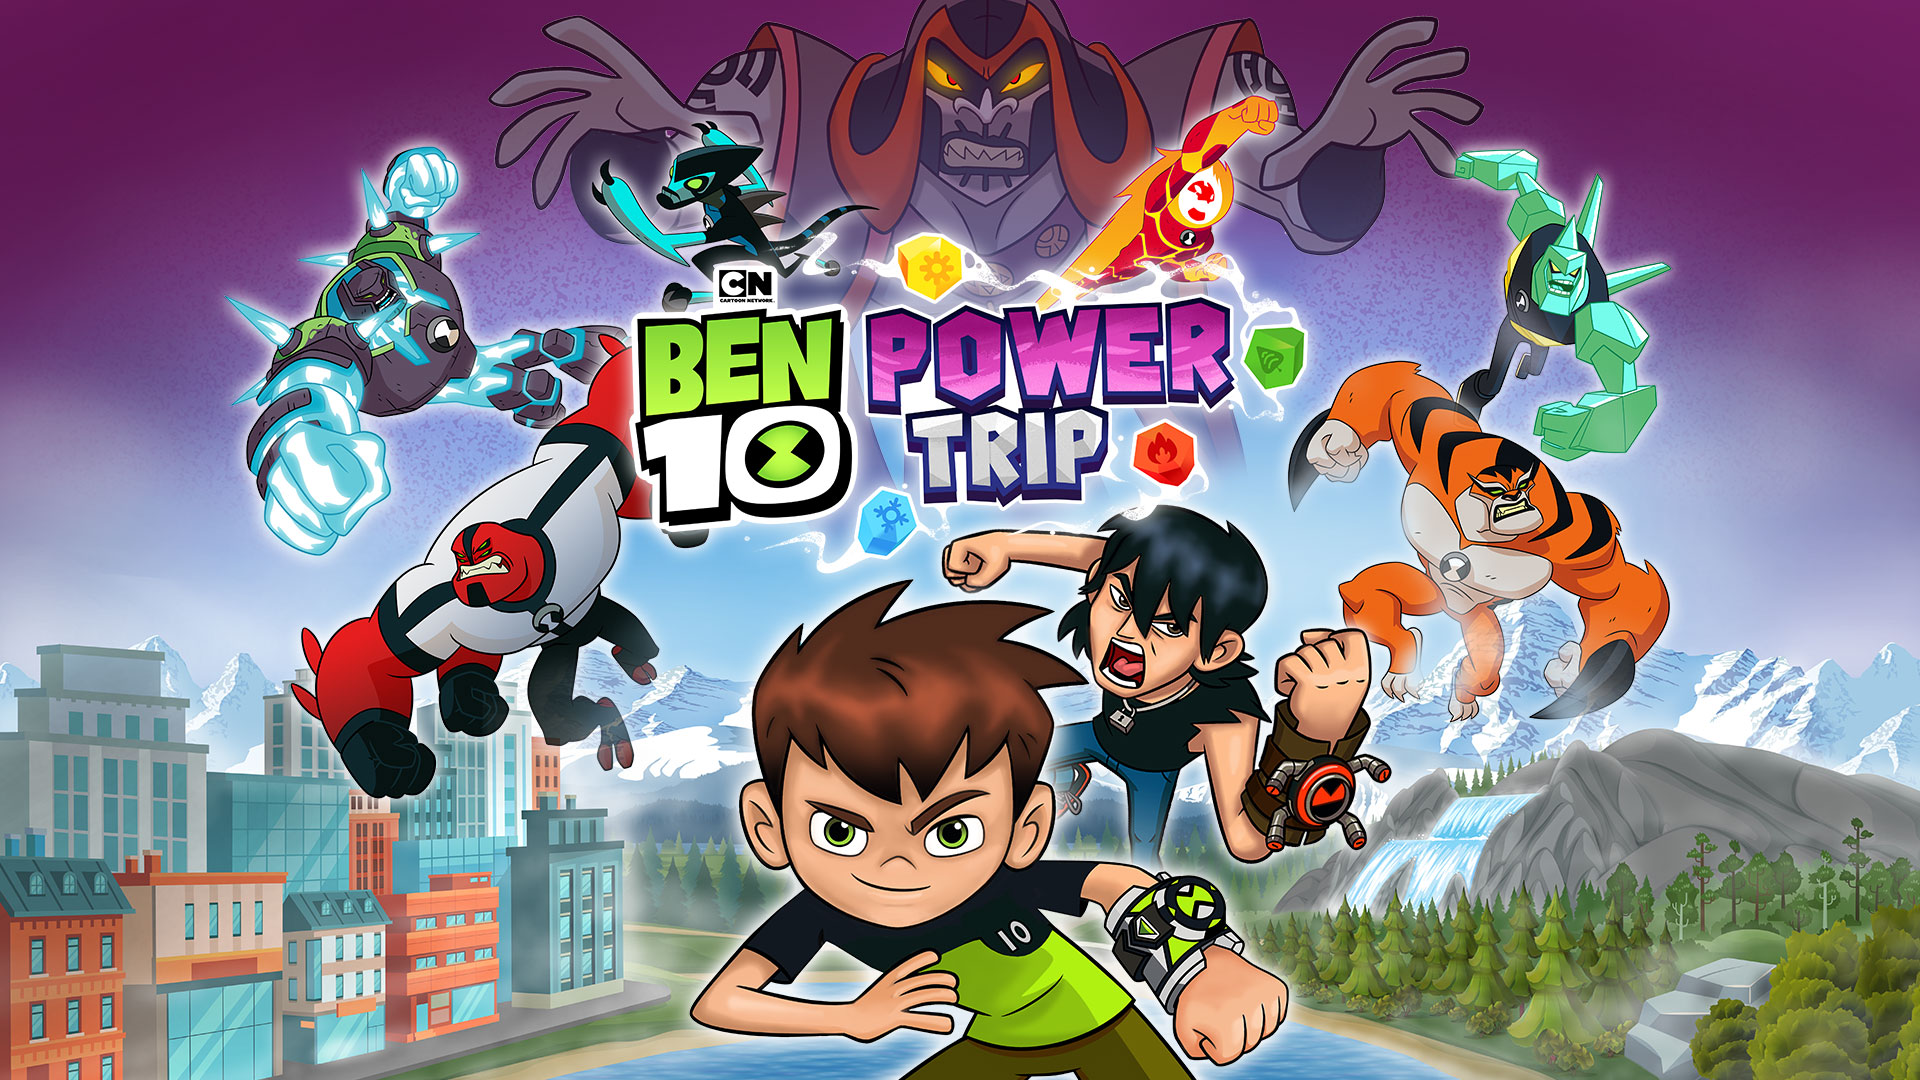 Ben 10: Power Trip iOS/APK Full Version Free Download